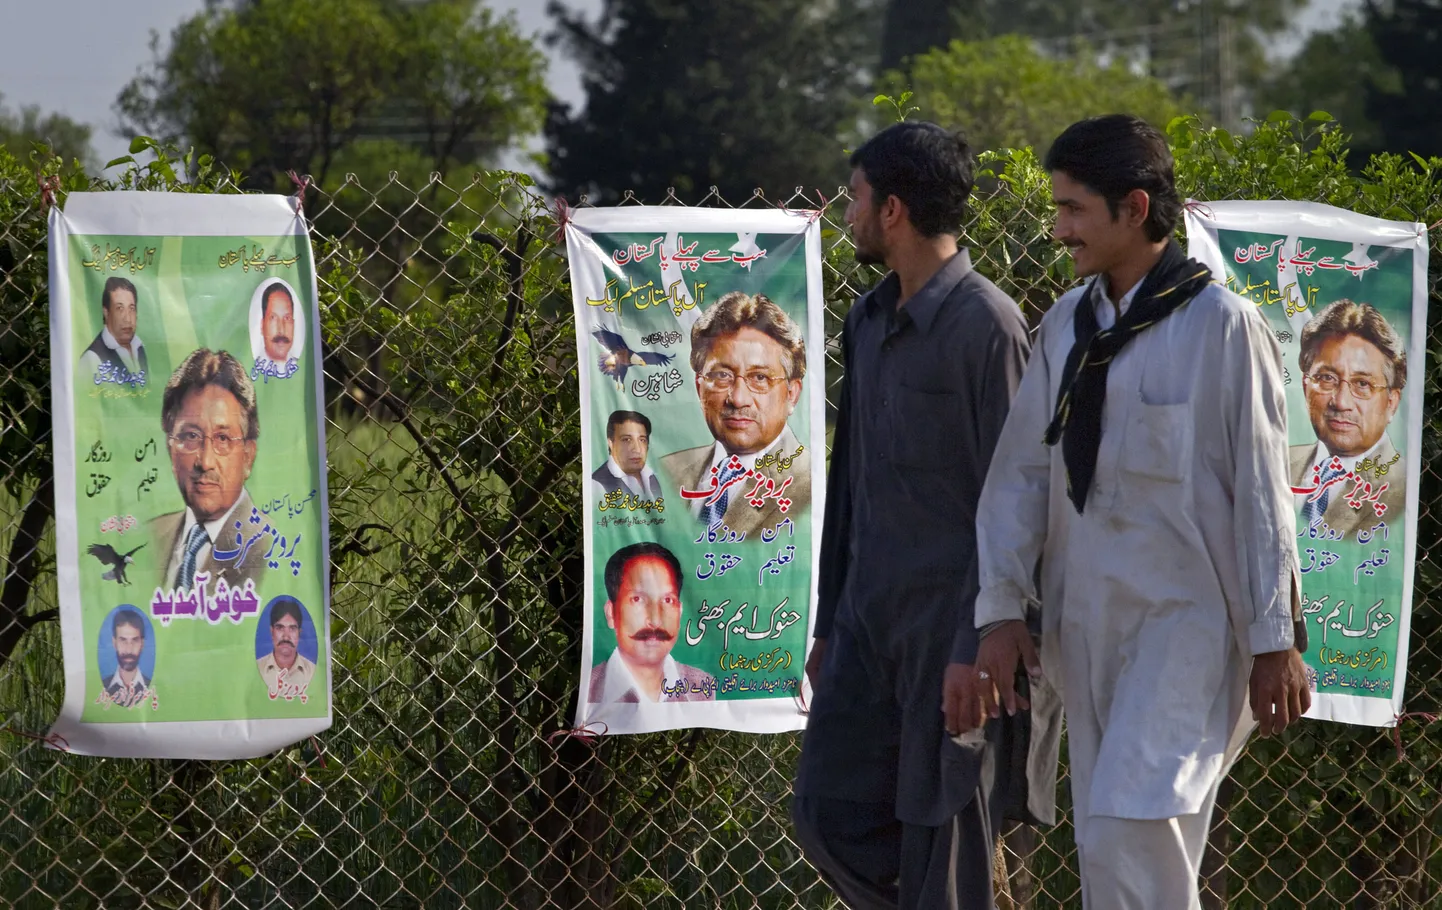 Islamabadis olevatel valimisplakatitel on kindral Pervez Musharrafi pilt kõige suurem.